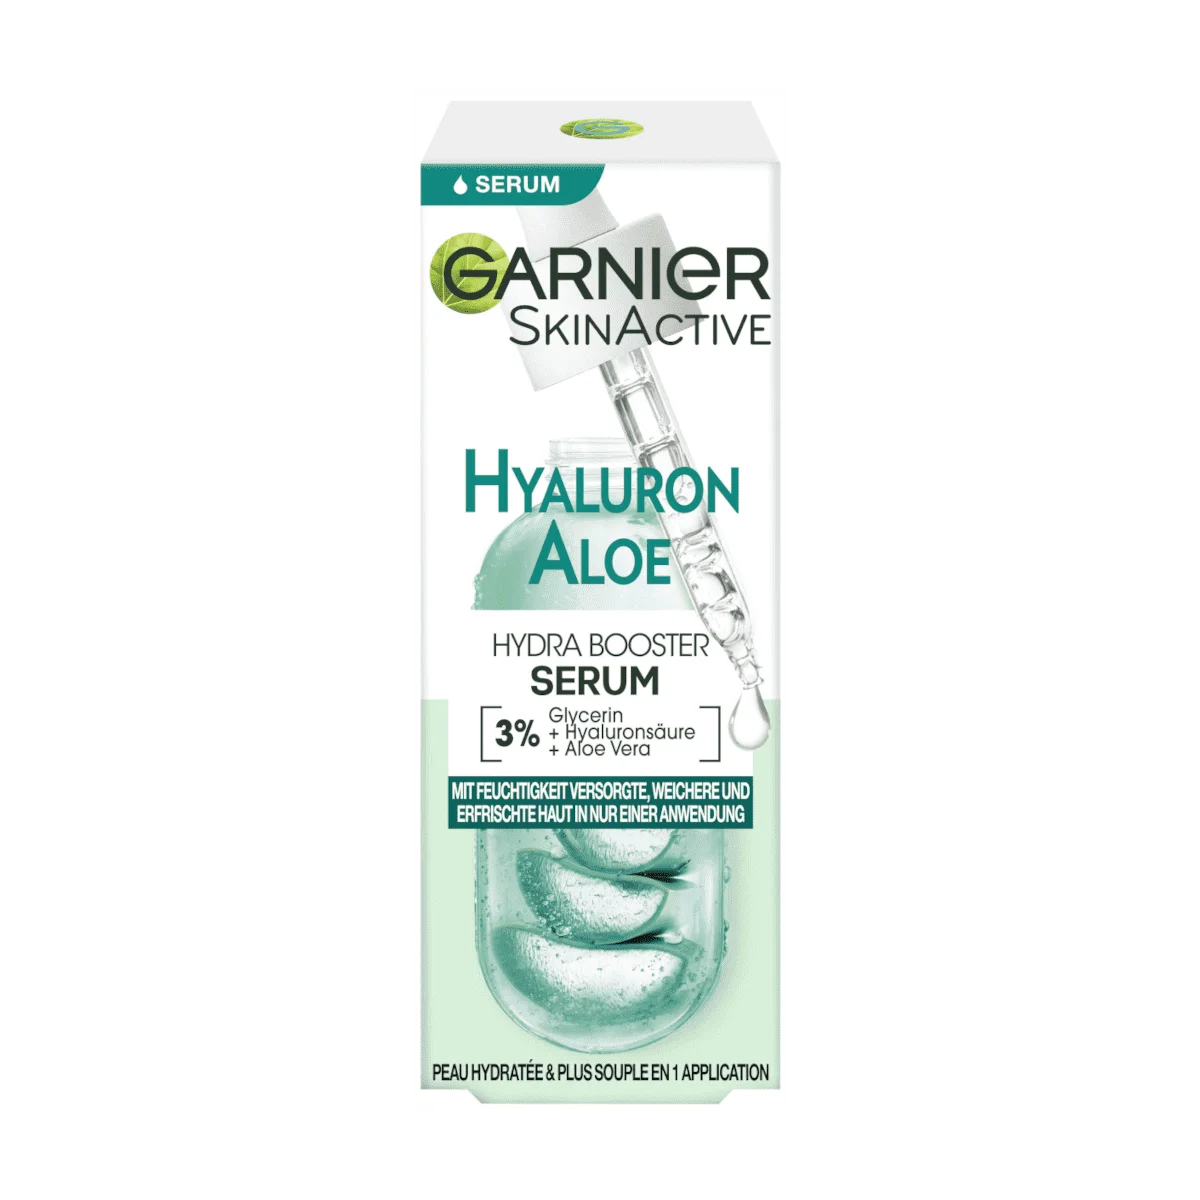 Garnier Hyaluron online Skin Serum, Active Aloe kaufen